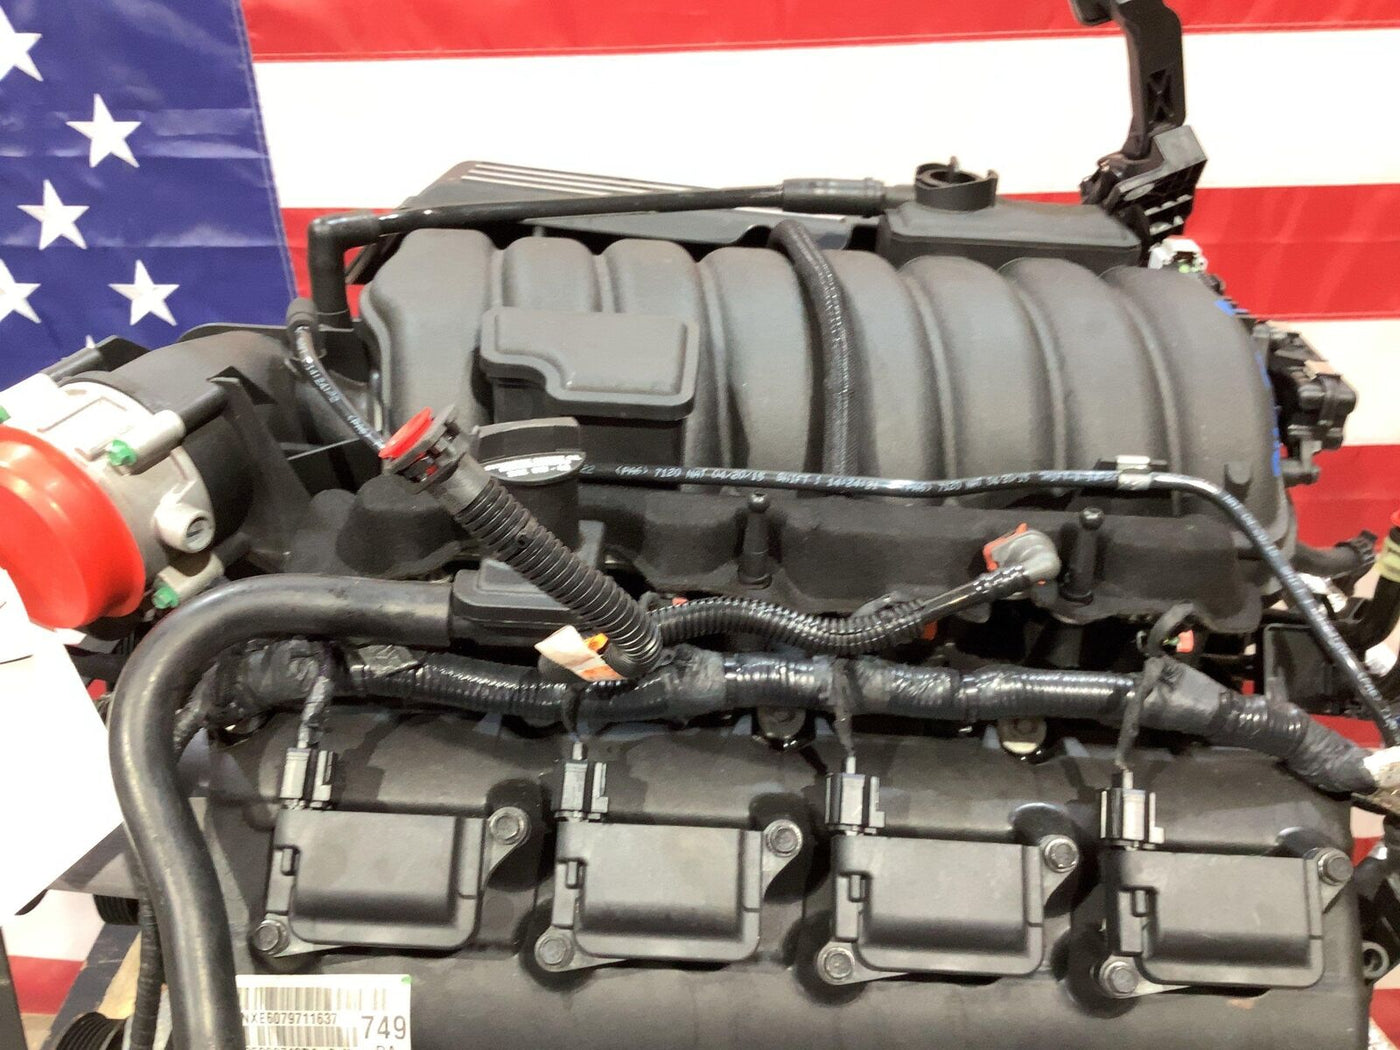 16-17 Jeep Grand Cherokee SRT8 475HP 6.4L Hemi Engine Dropout Hot Rod Swap 52K